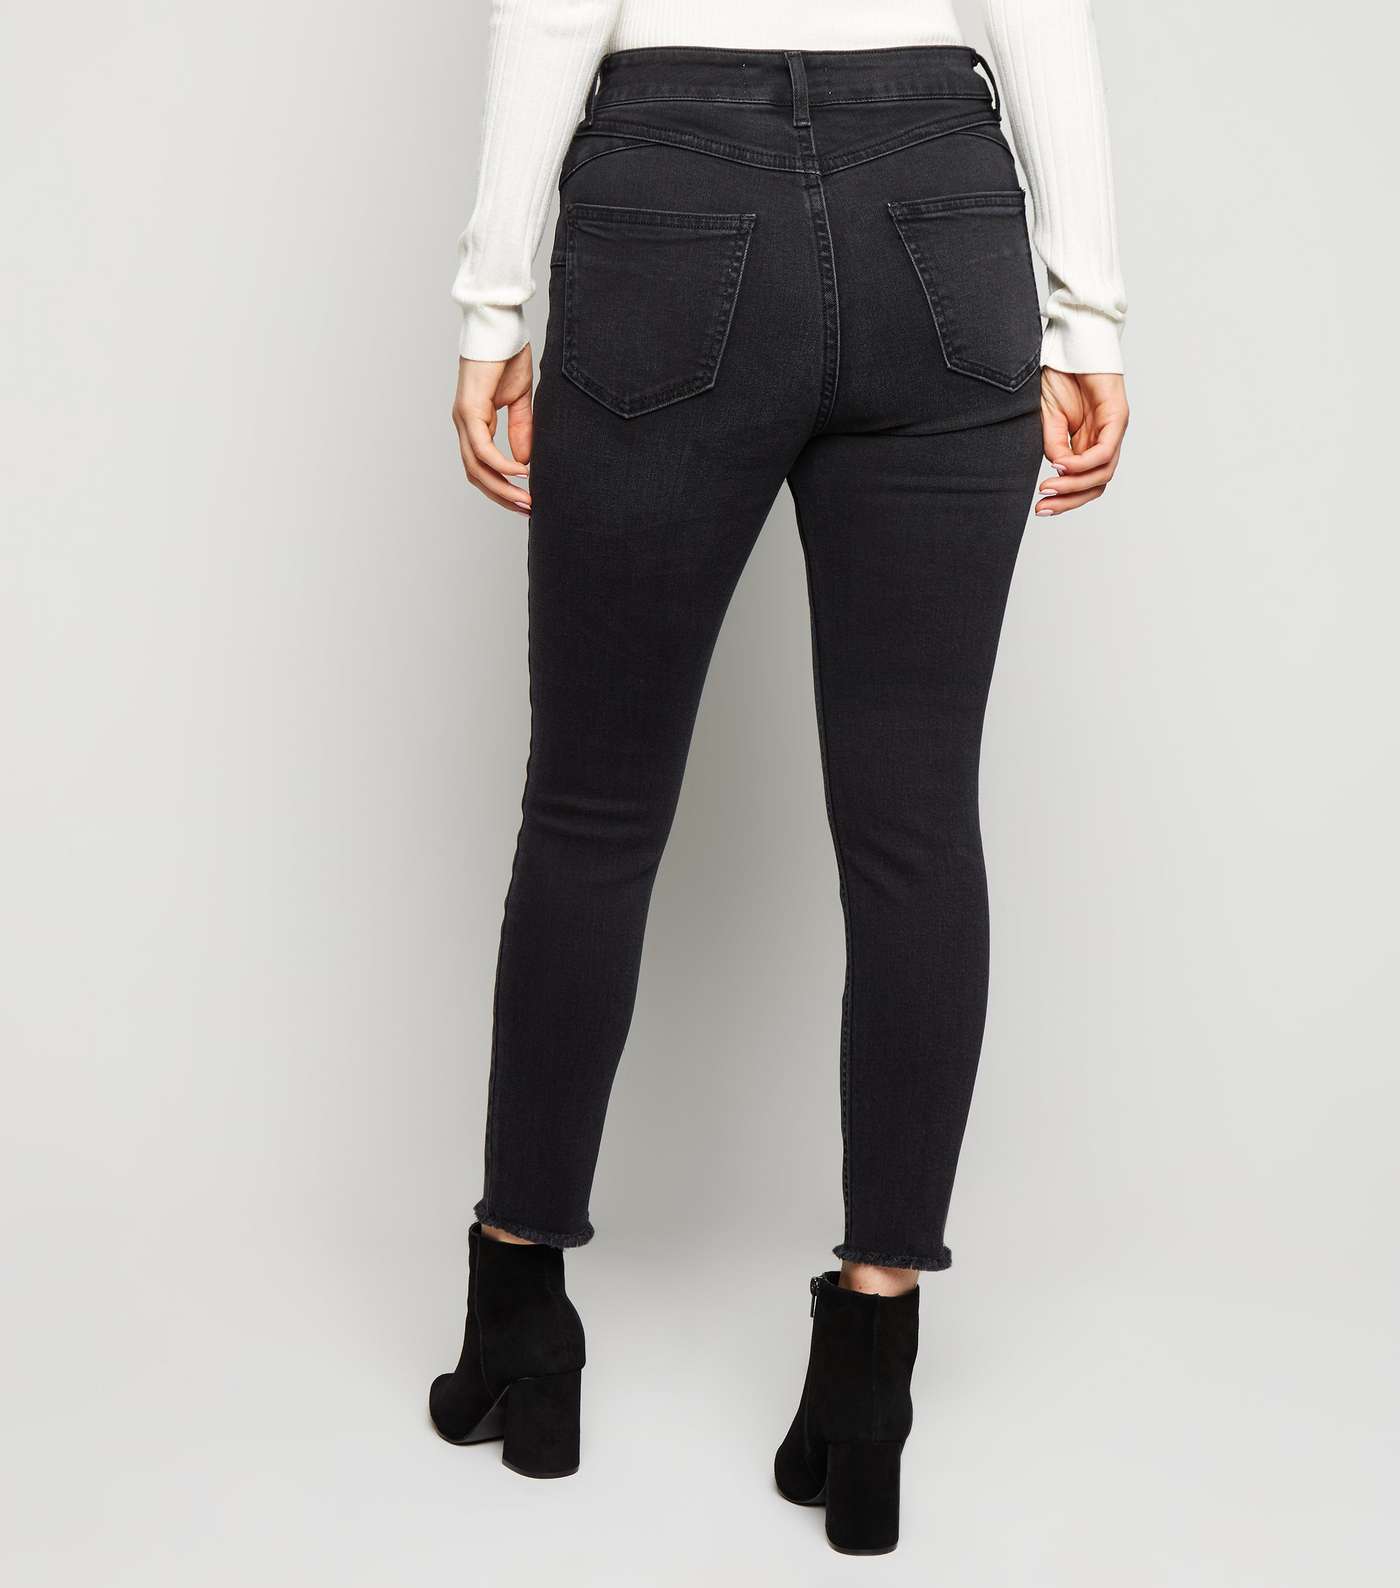 Petite Black 'Lift & Shape' High Rise Ripped Jeans Image 3